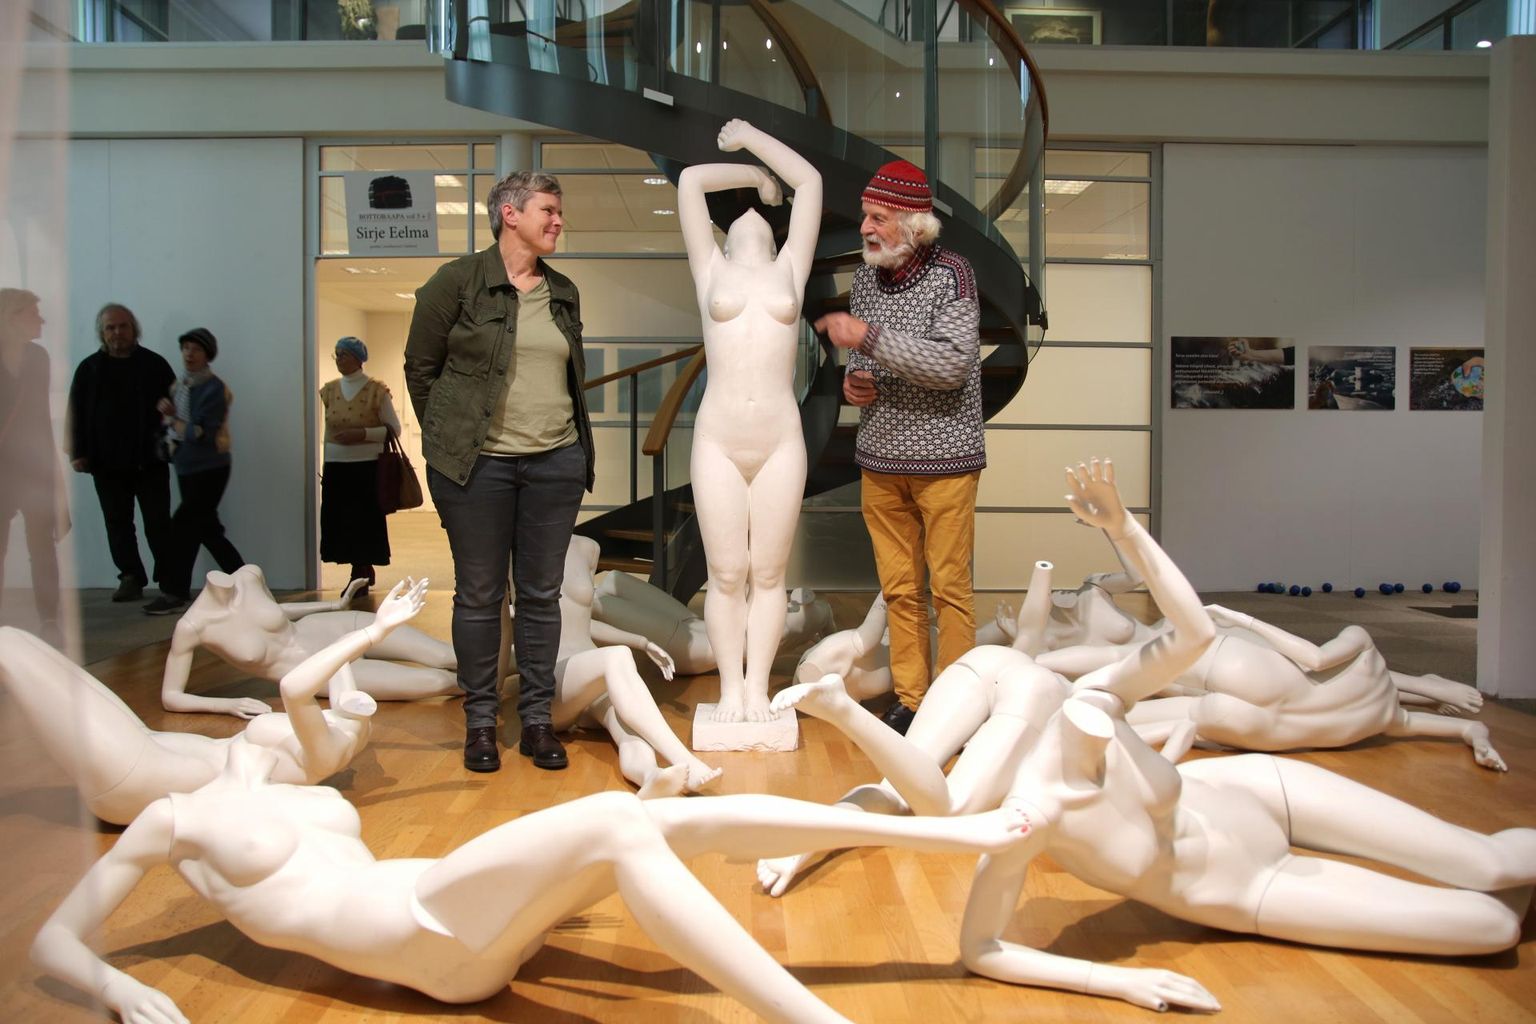 Isikunäitusel "Useful (AB)use" näeb Pärnu uue kunsti muuseumis skulptori ja installatsioonikunstniku Elo Liivi teoseid, mis visuaalsete lühivormidena käsitlevad vägivaldse ja pahatahtliku manipuleerimise viise, oma lähedaste ja ümbritseva maailma kasulikku ärakasutamist.